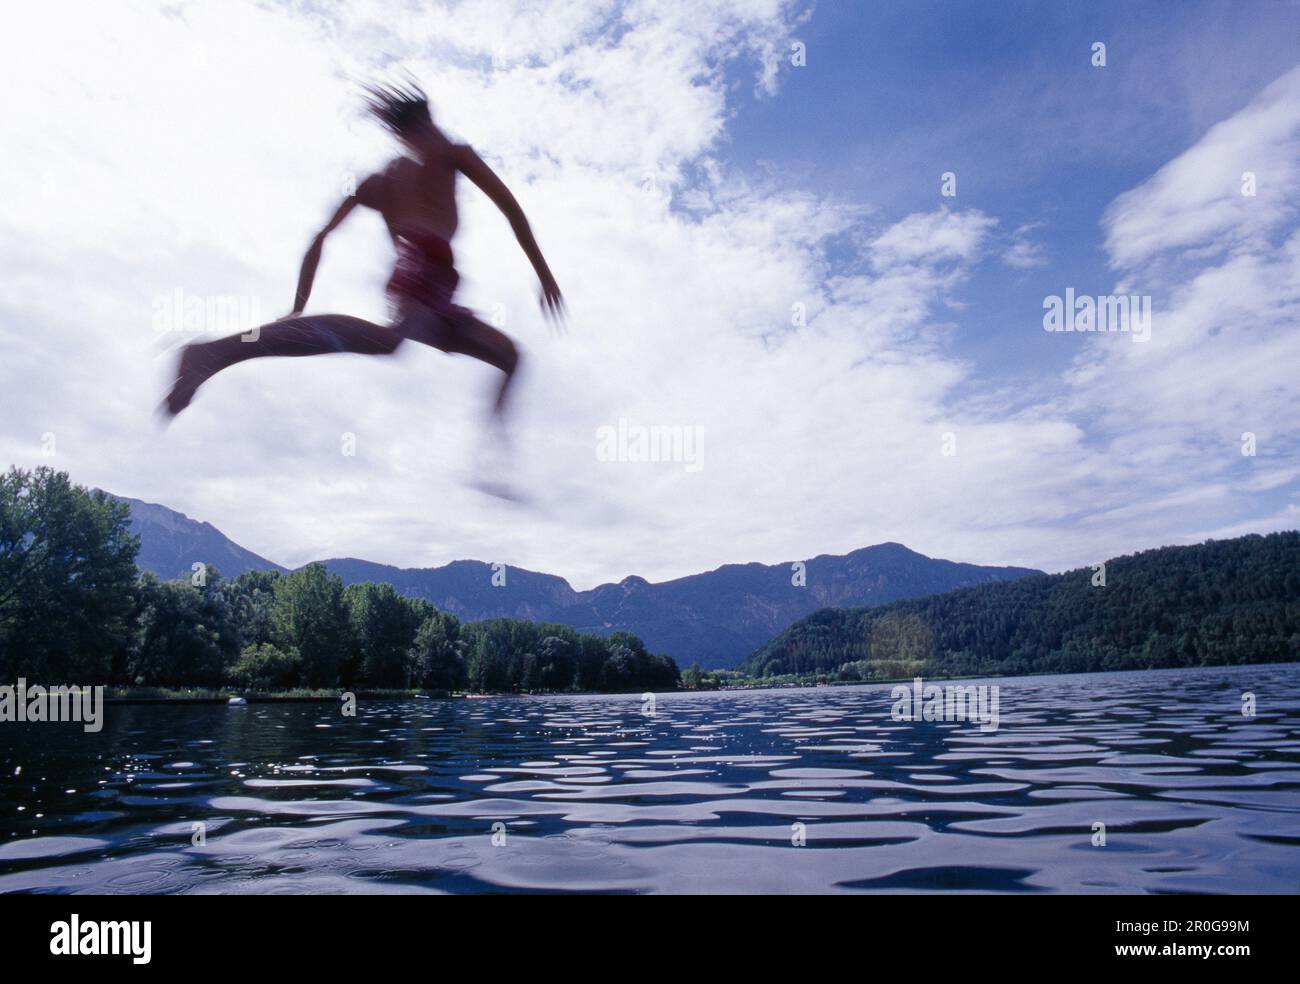 Giovane uomo che si tuffa nel lago di Levico, Valsugana, Trentino-Alto Adige/Südtirol, Italia Foto Stock